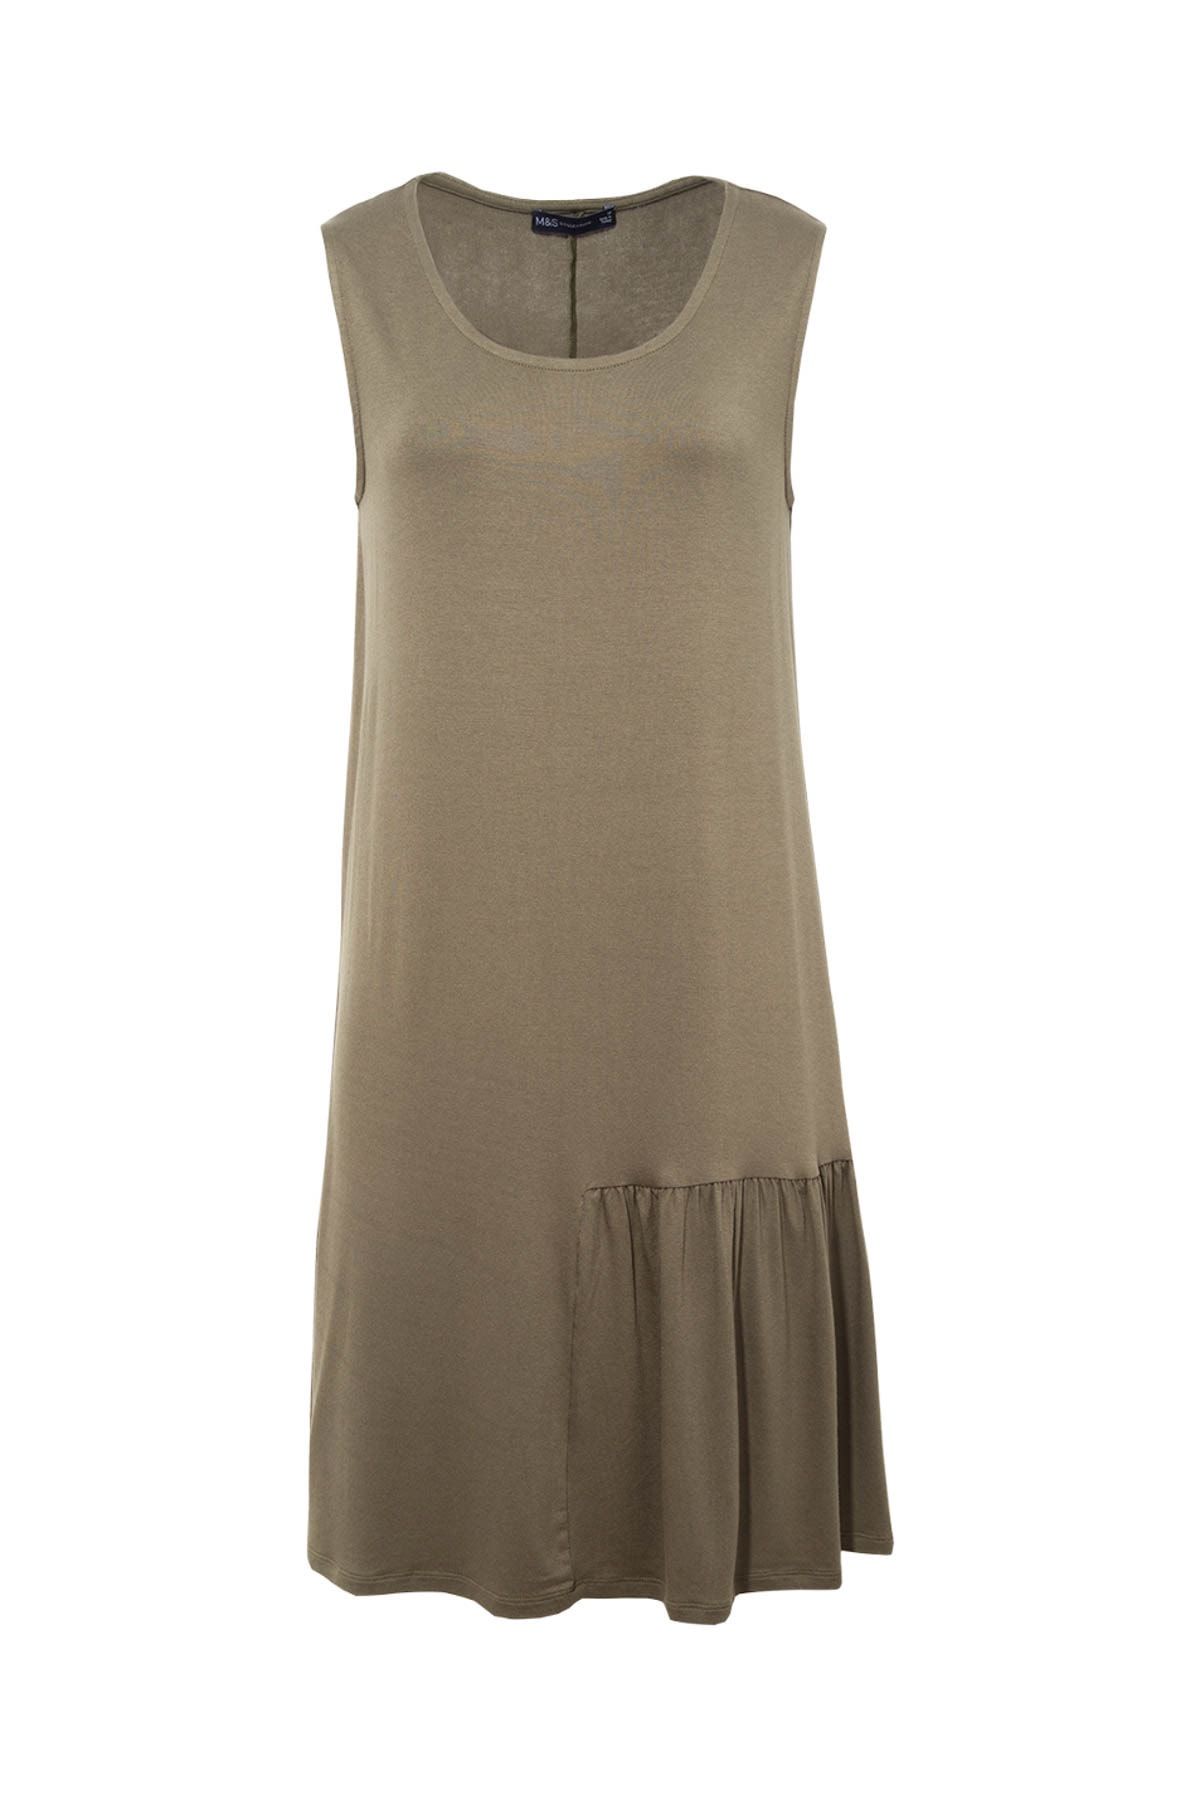 Marks & Spencer Kadın Yeşil Swing Plaj Elbisesi T52004250H